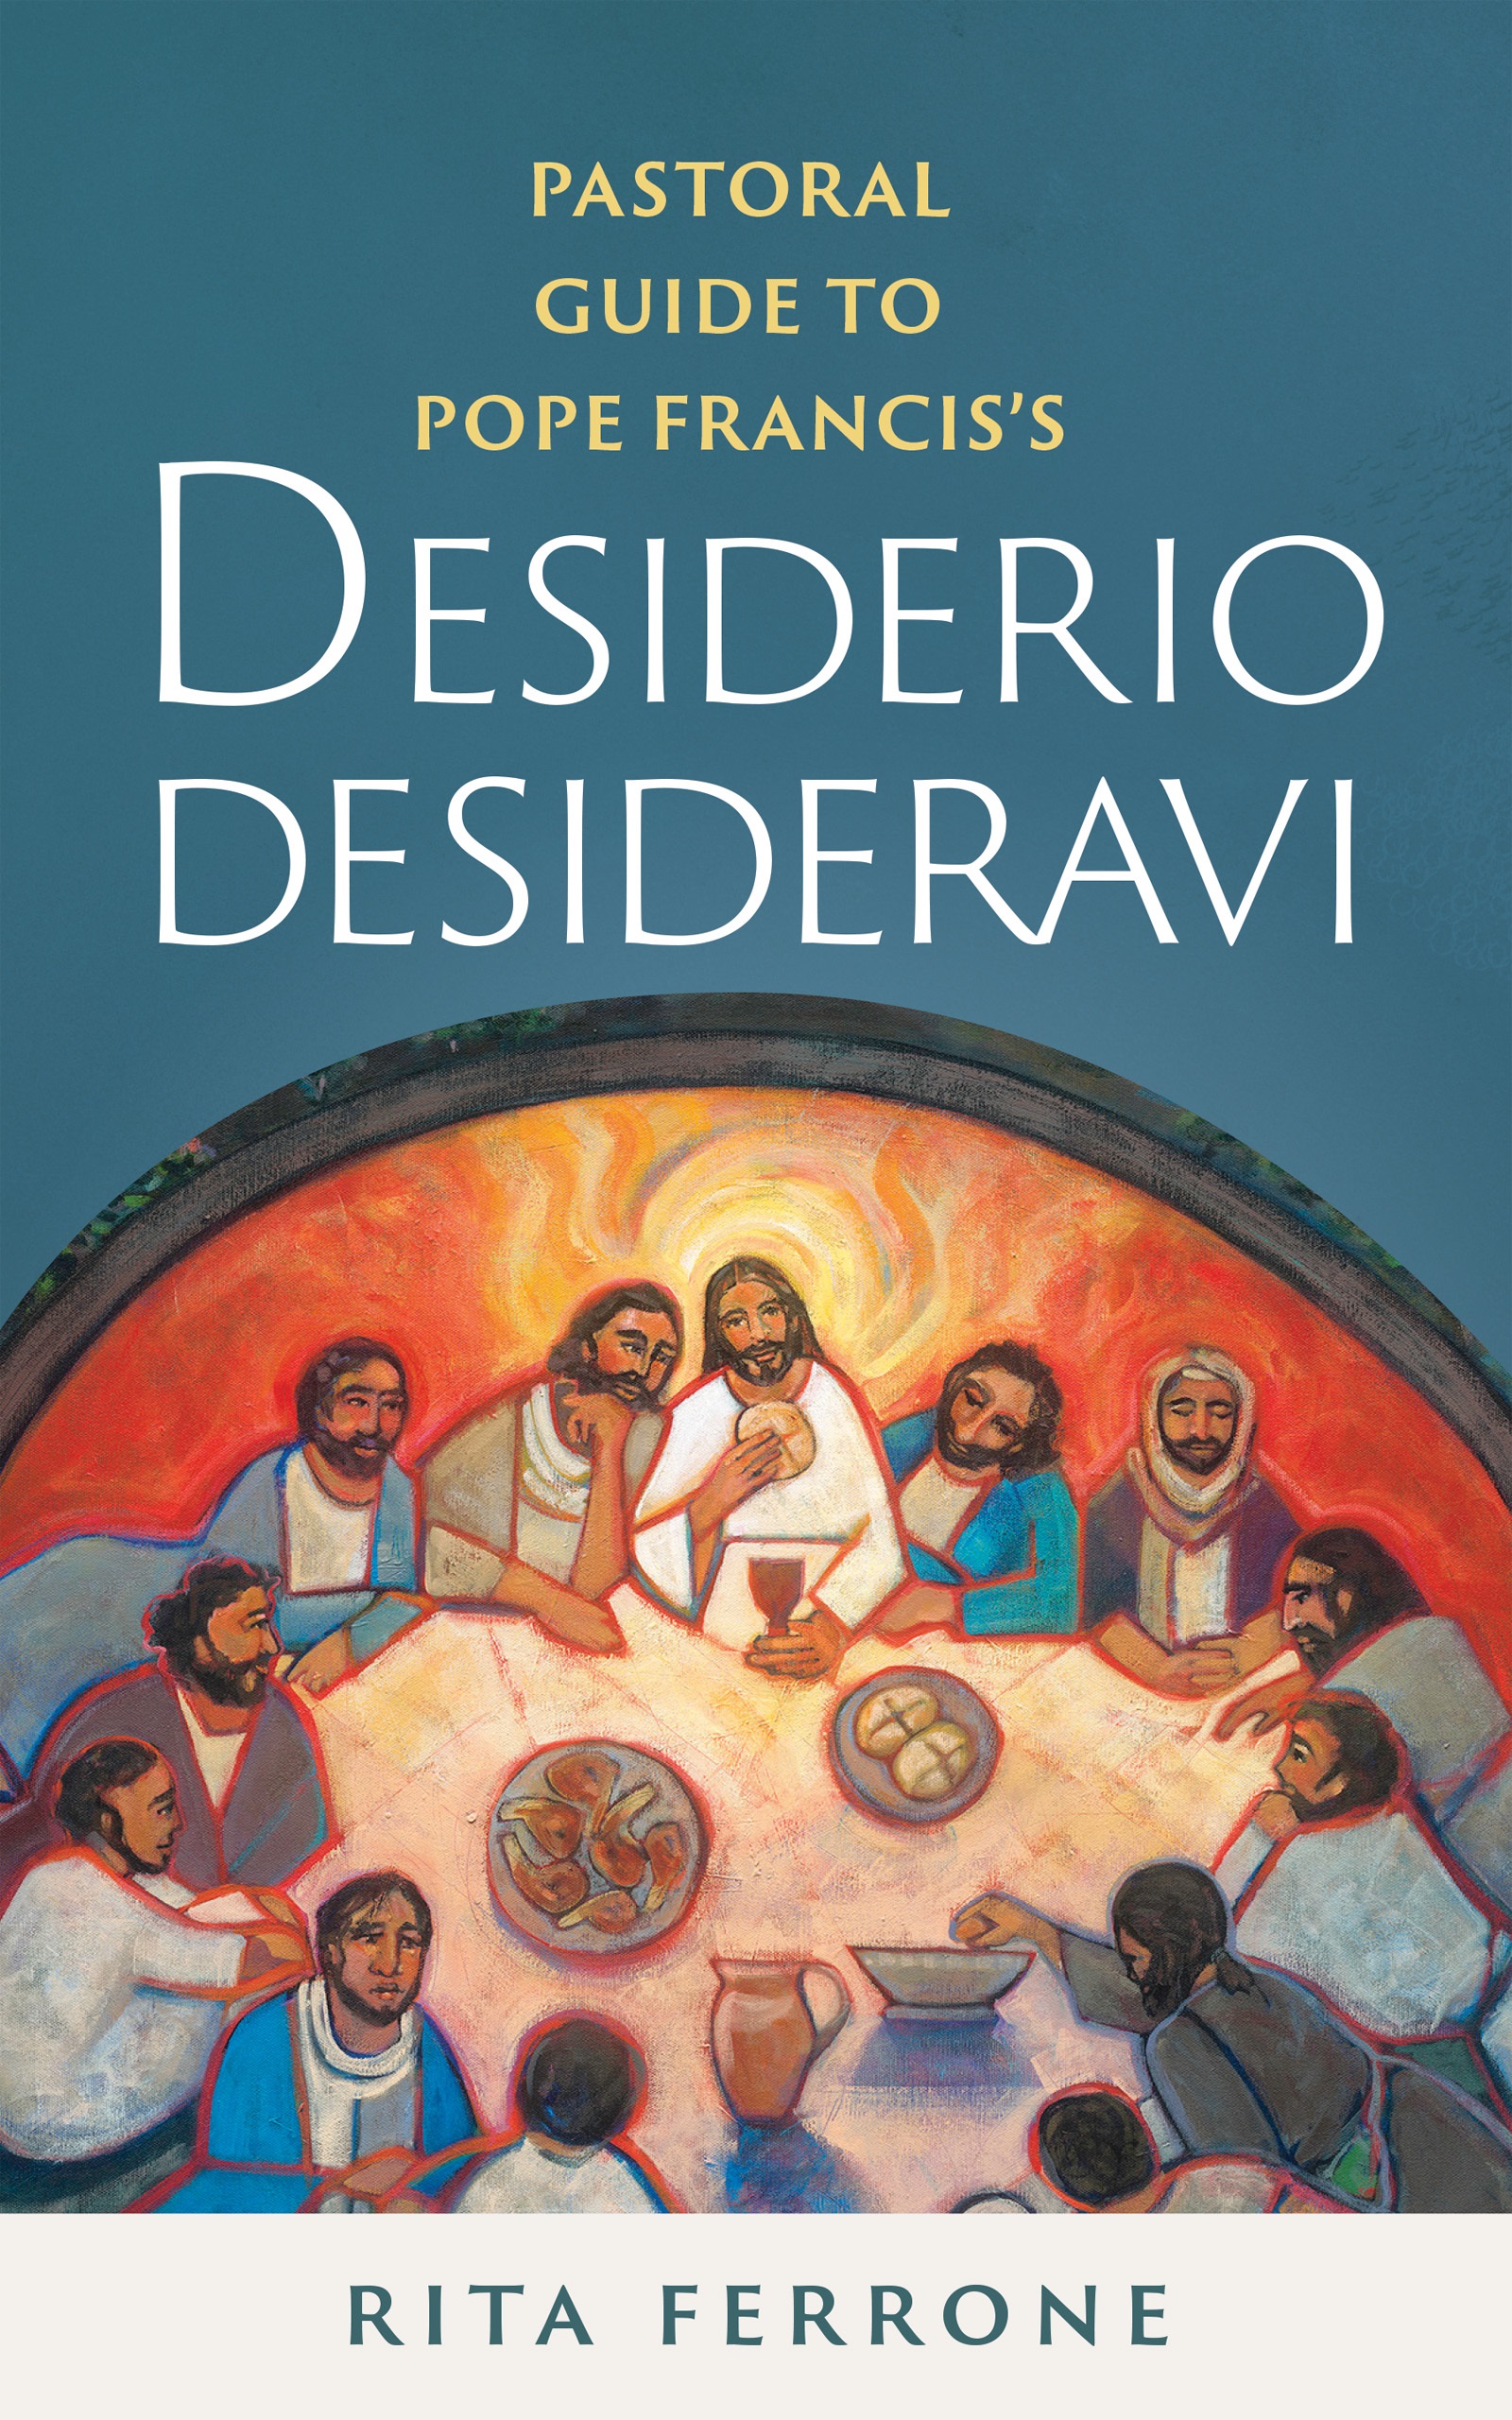 Cover of "Desiderio Desideravi" by Rita Ferrone